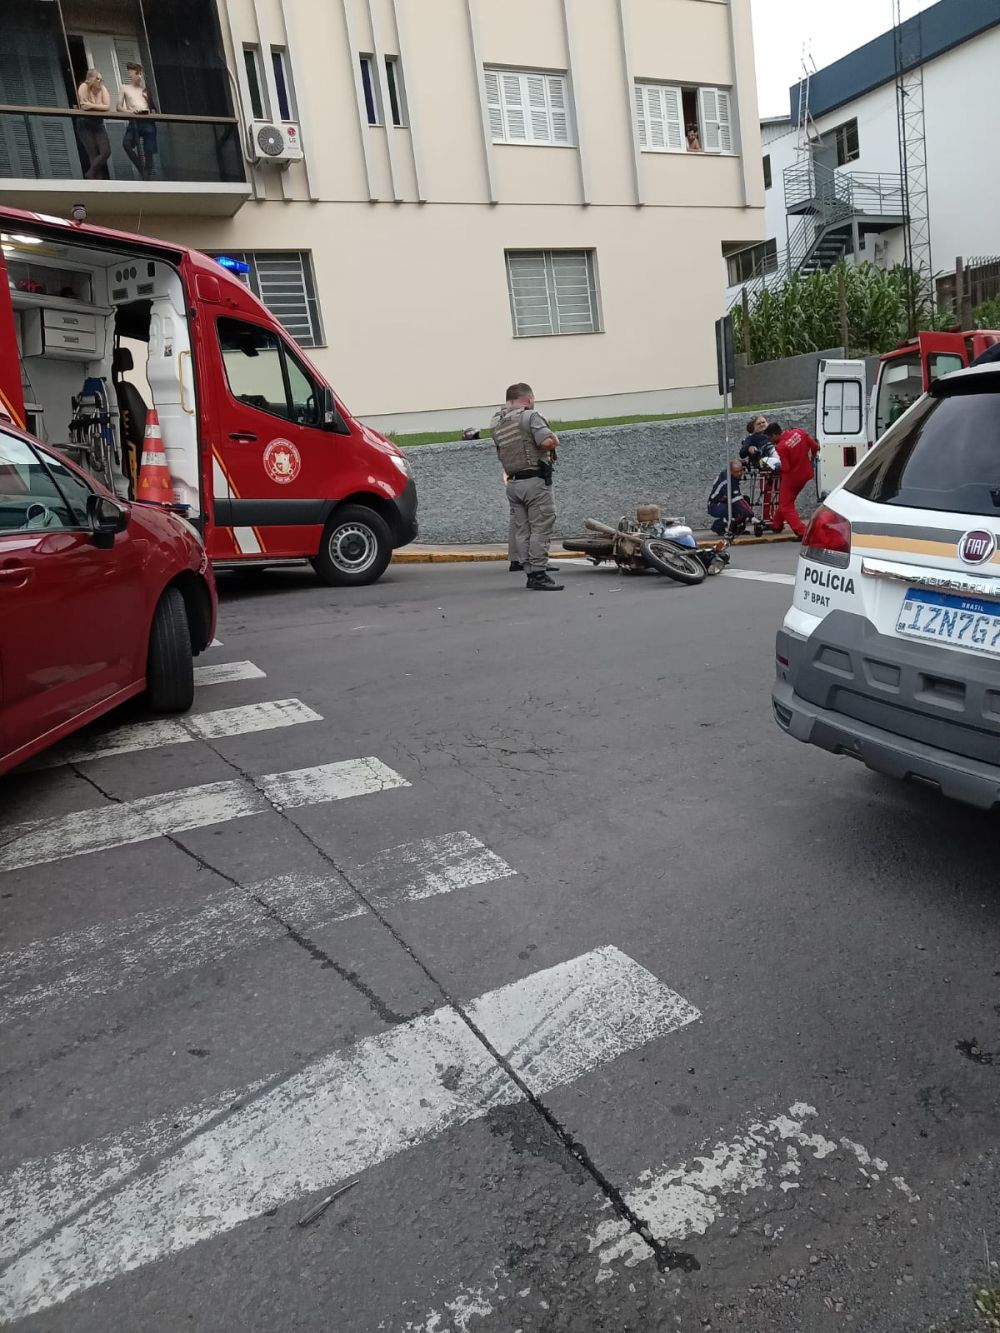  Motociclista fica ferido após colisão com veículo em Garibaldi 